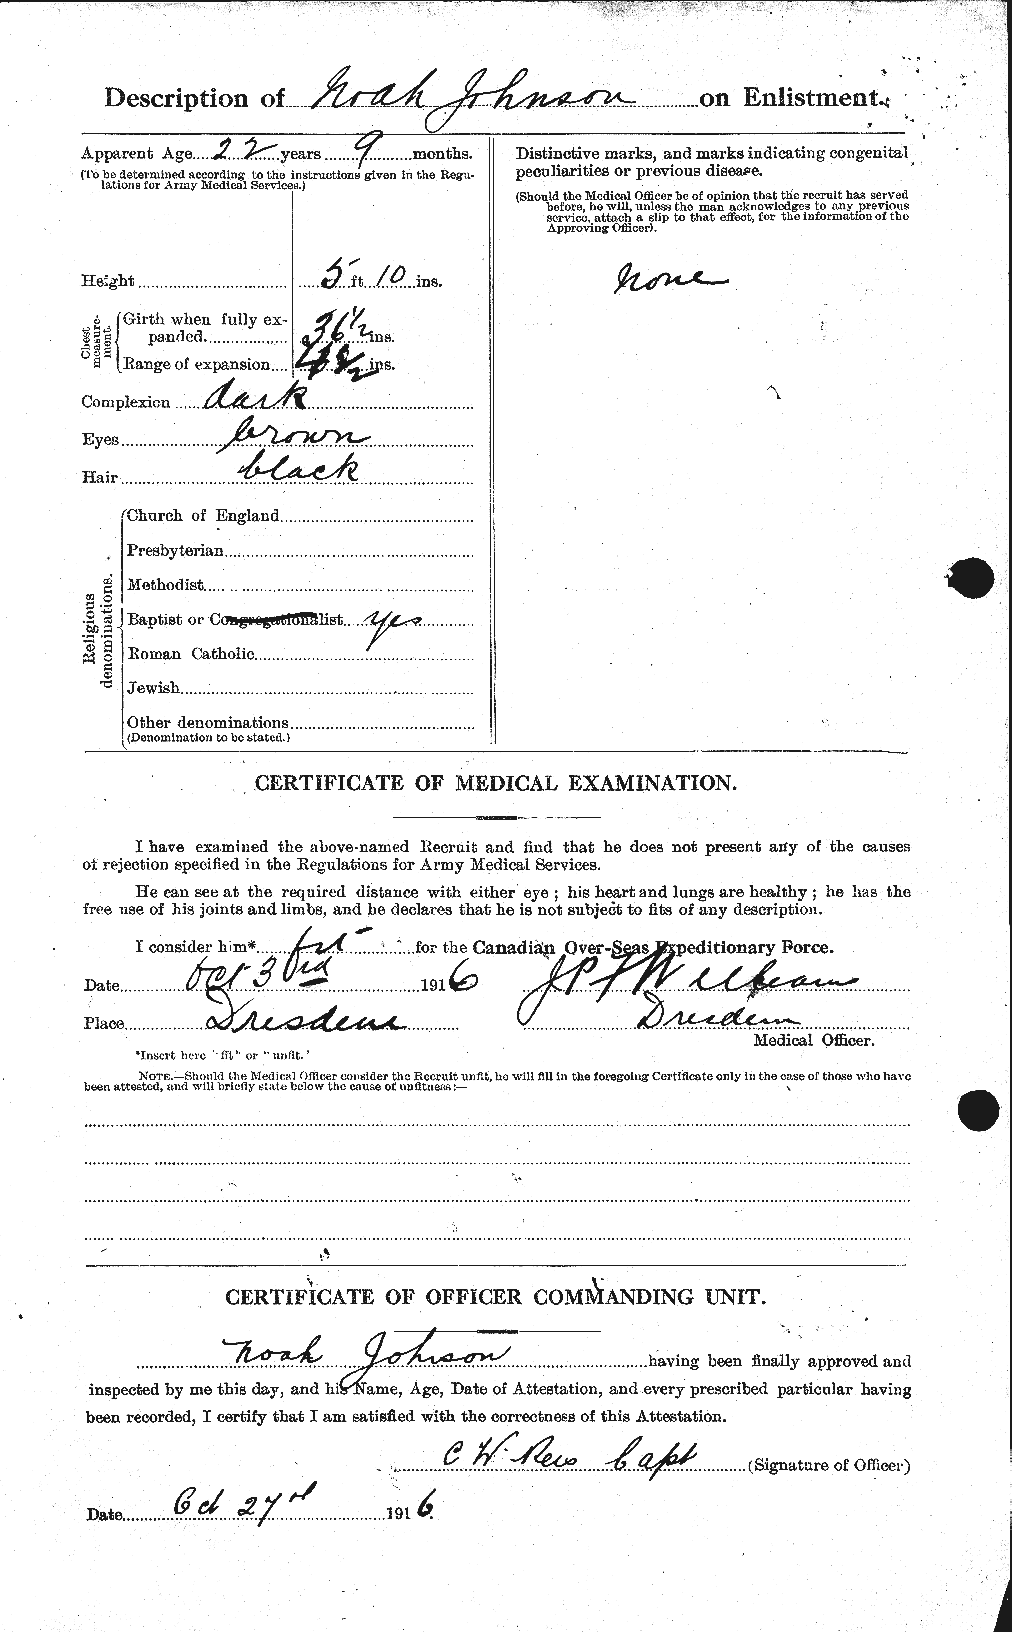 Dossiers du Personnel de la Première Guerre mondiale - CEC 417183b